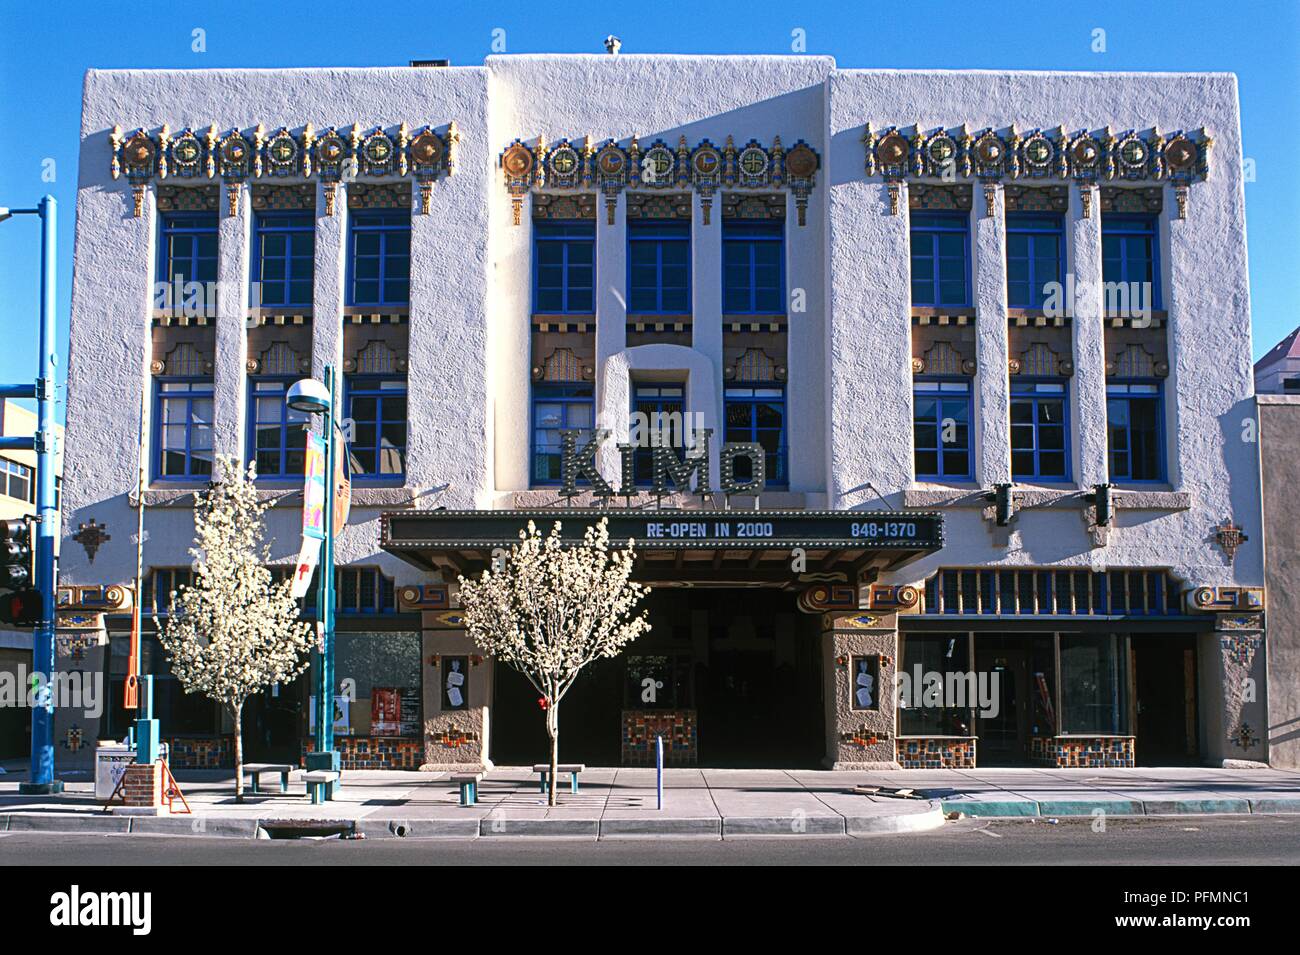 USA, New Mexico, Albuquerque, KiMo Theater, Art Deco facade of theater, built in 1927 Stock Photo